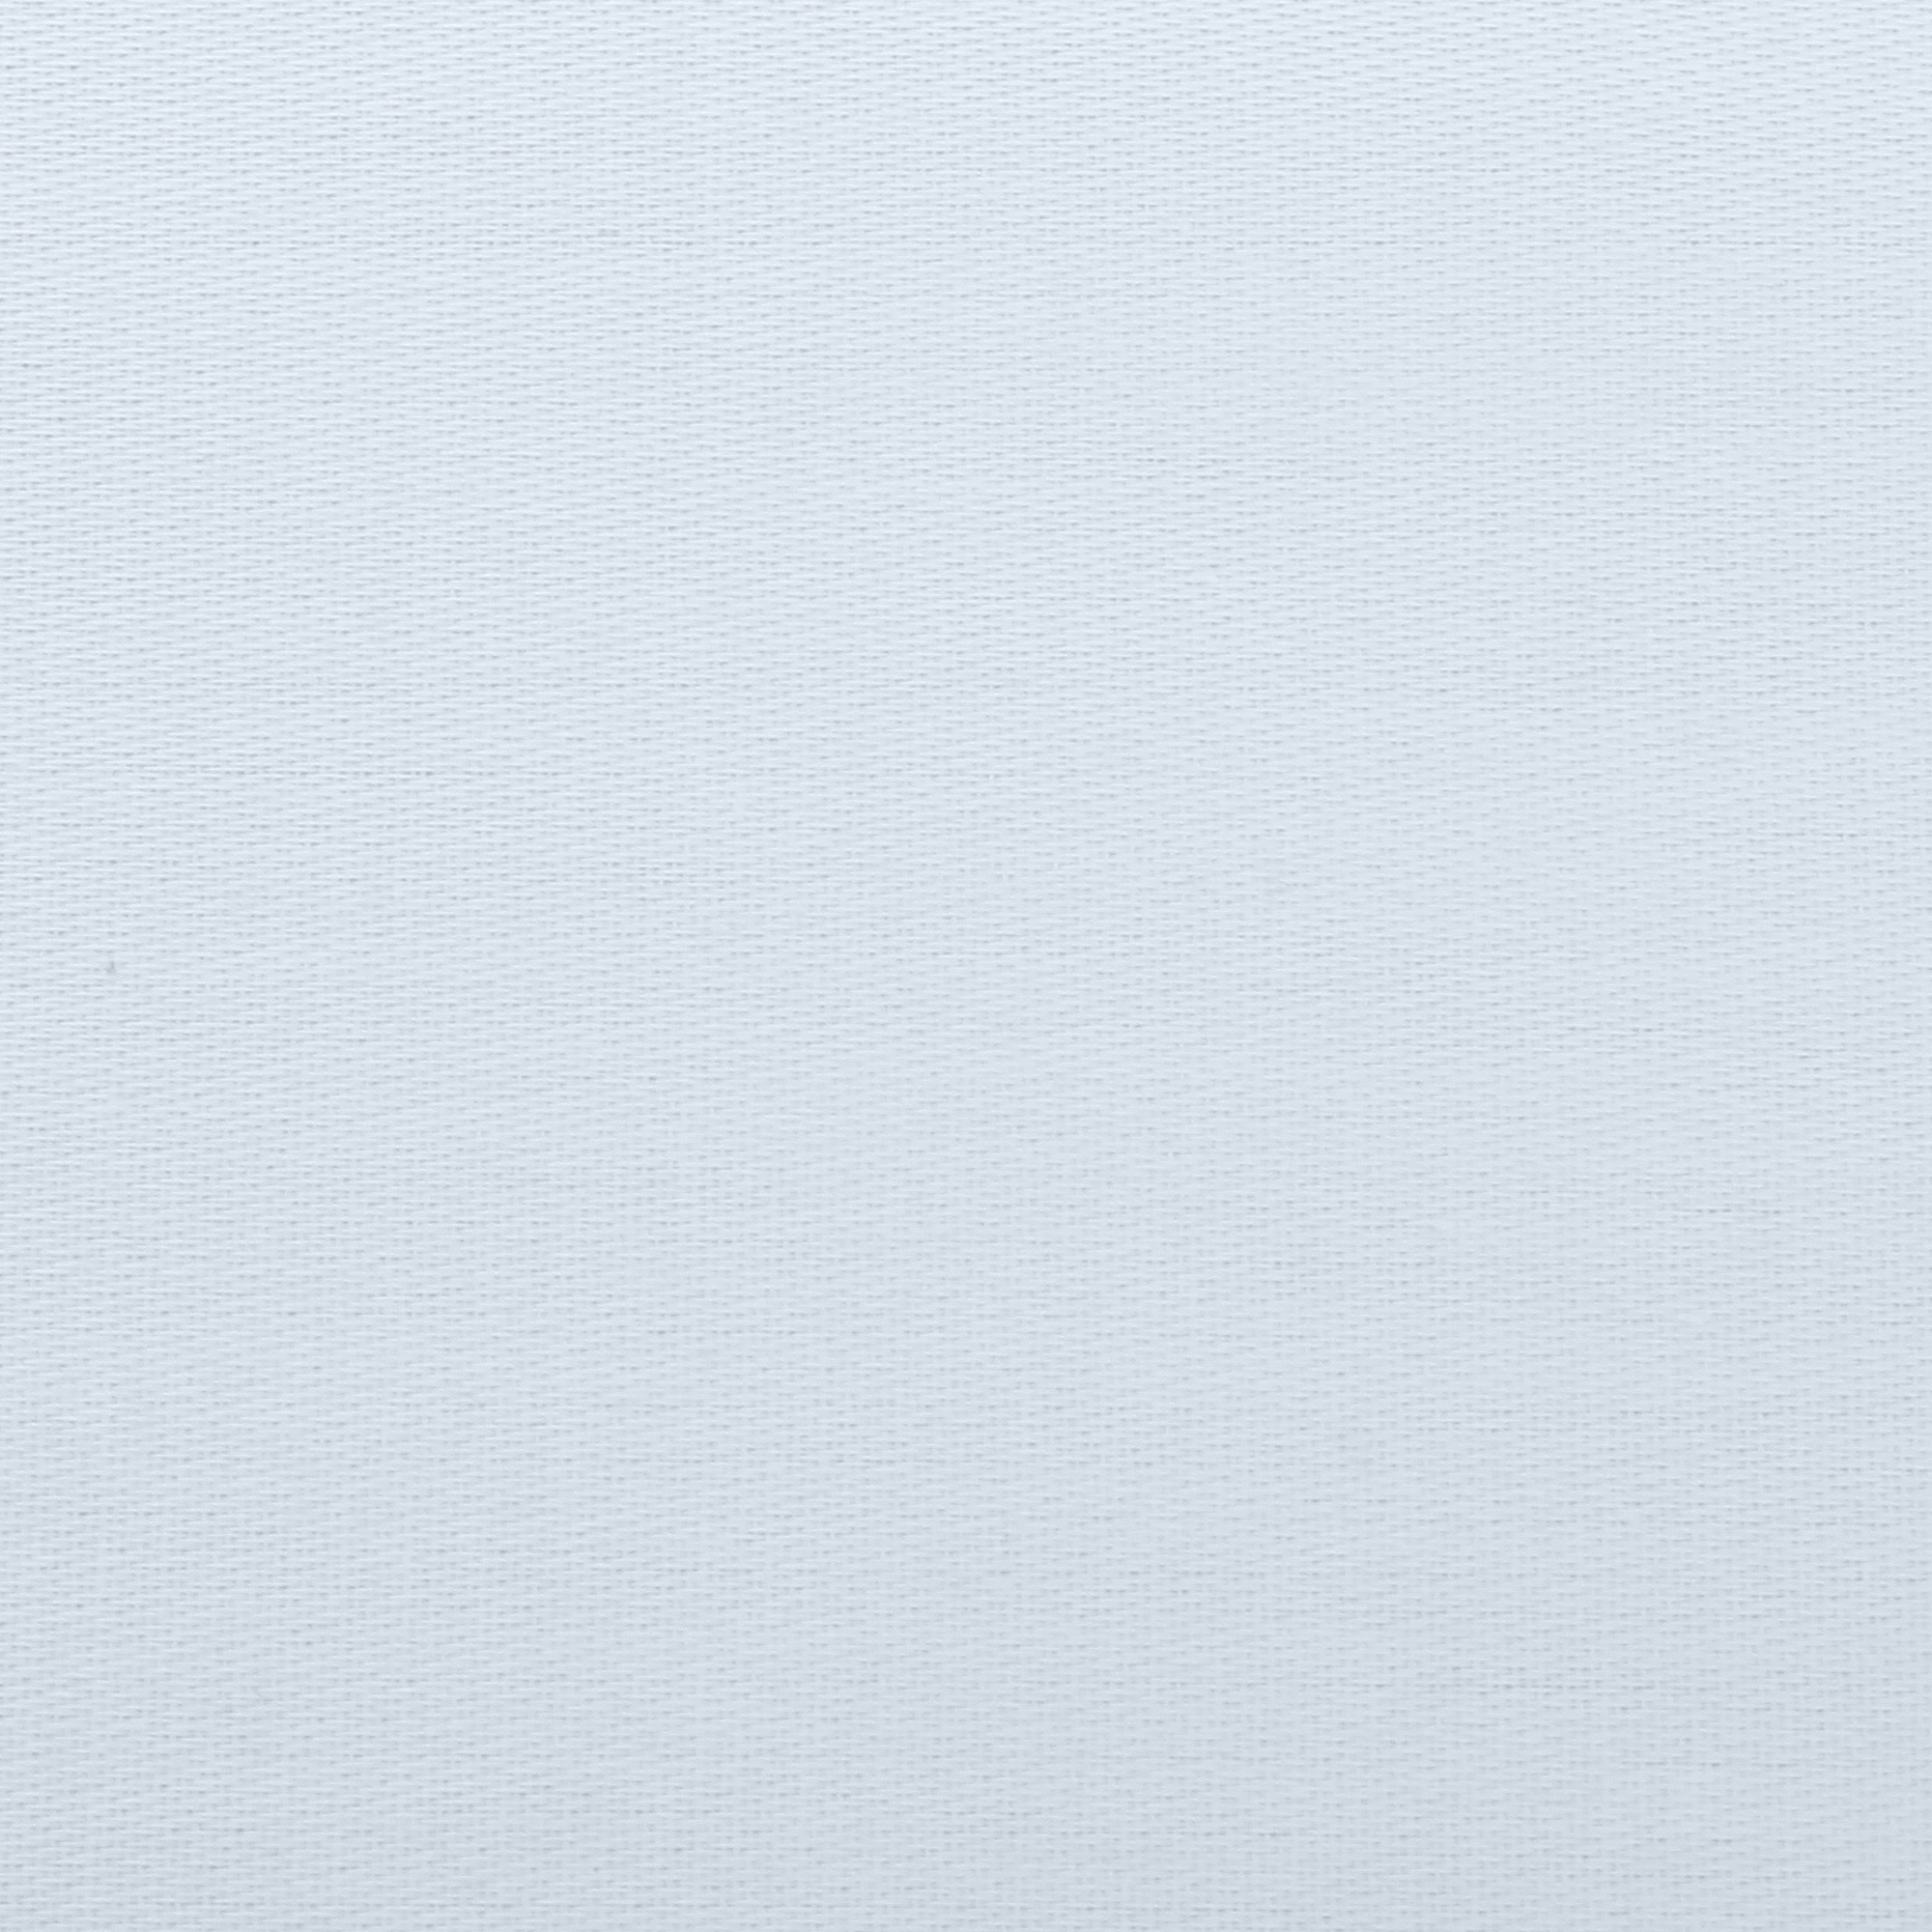 Комплект постельного белья La Besse Сатин серый Кинг сайз, размер Кинг сайз - фото 4